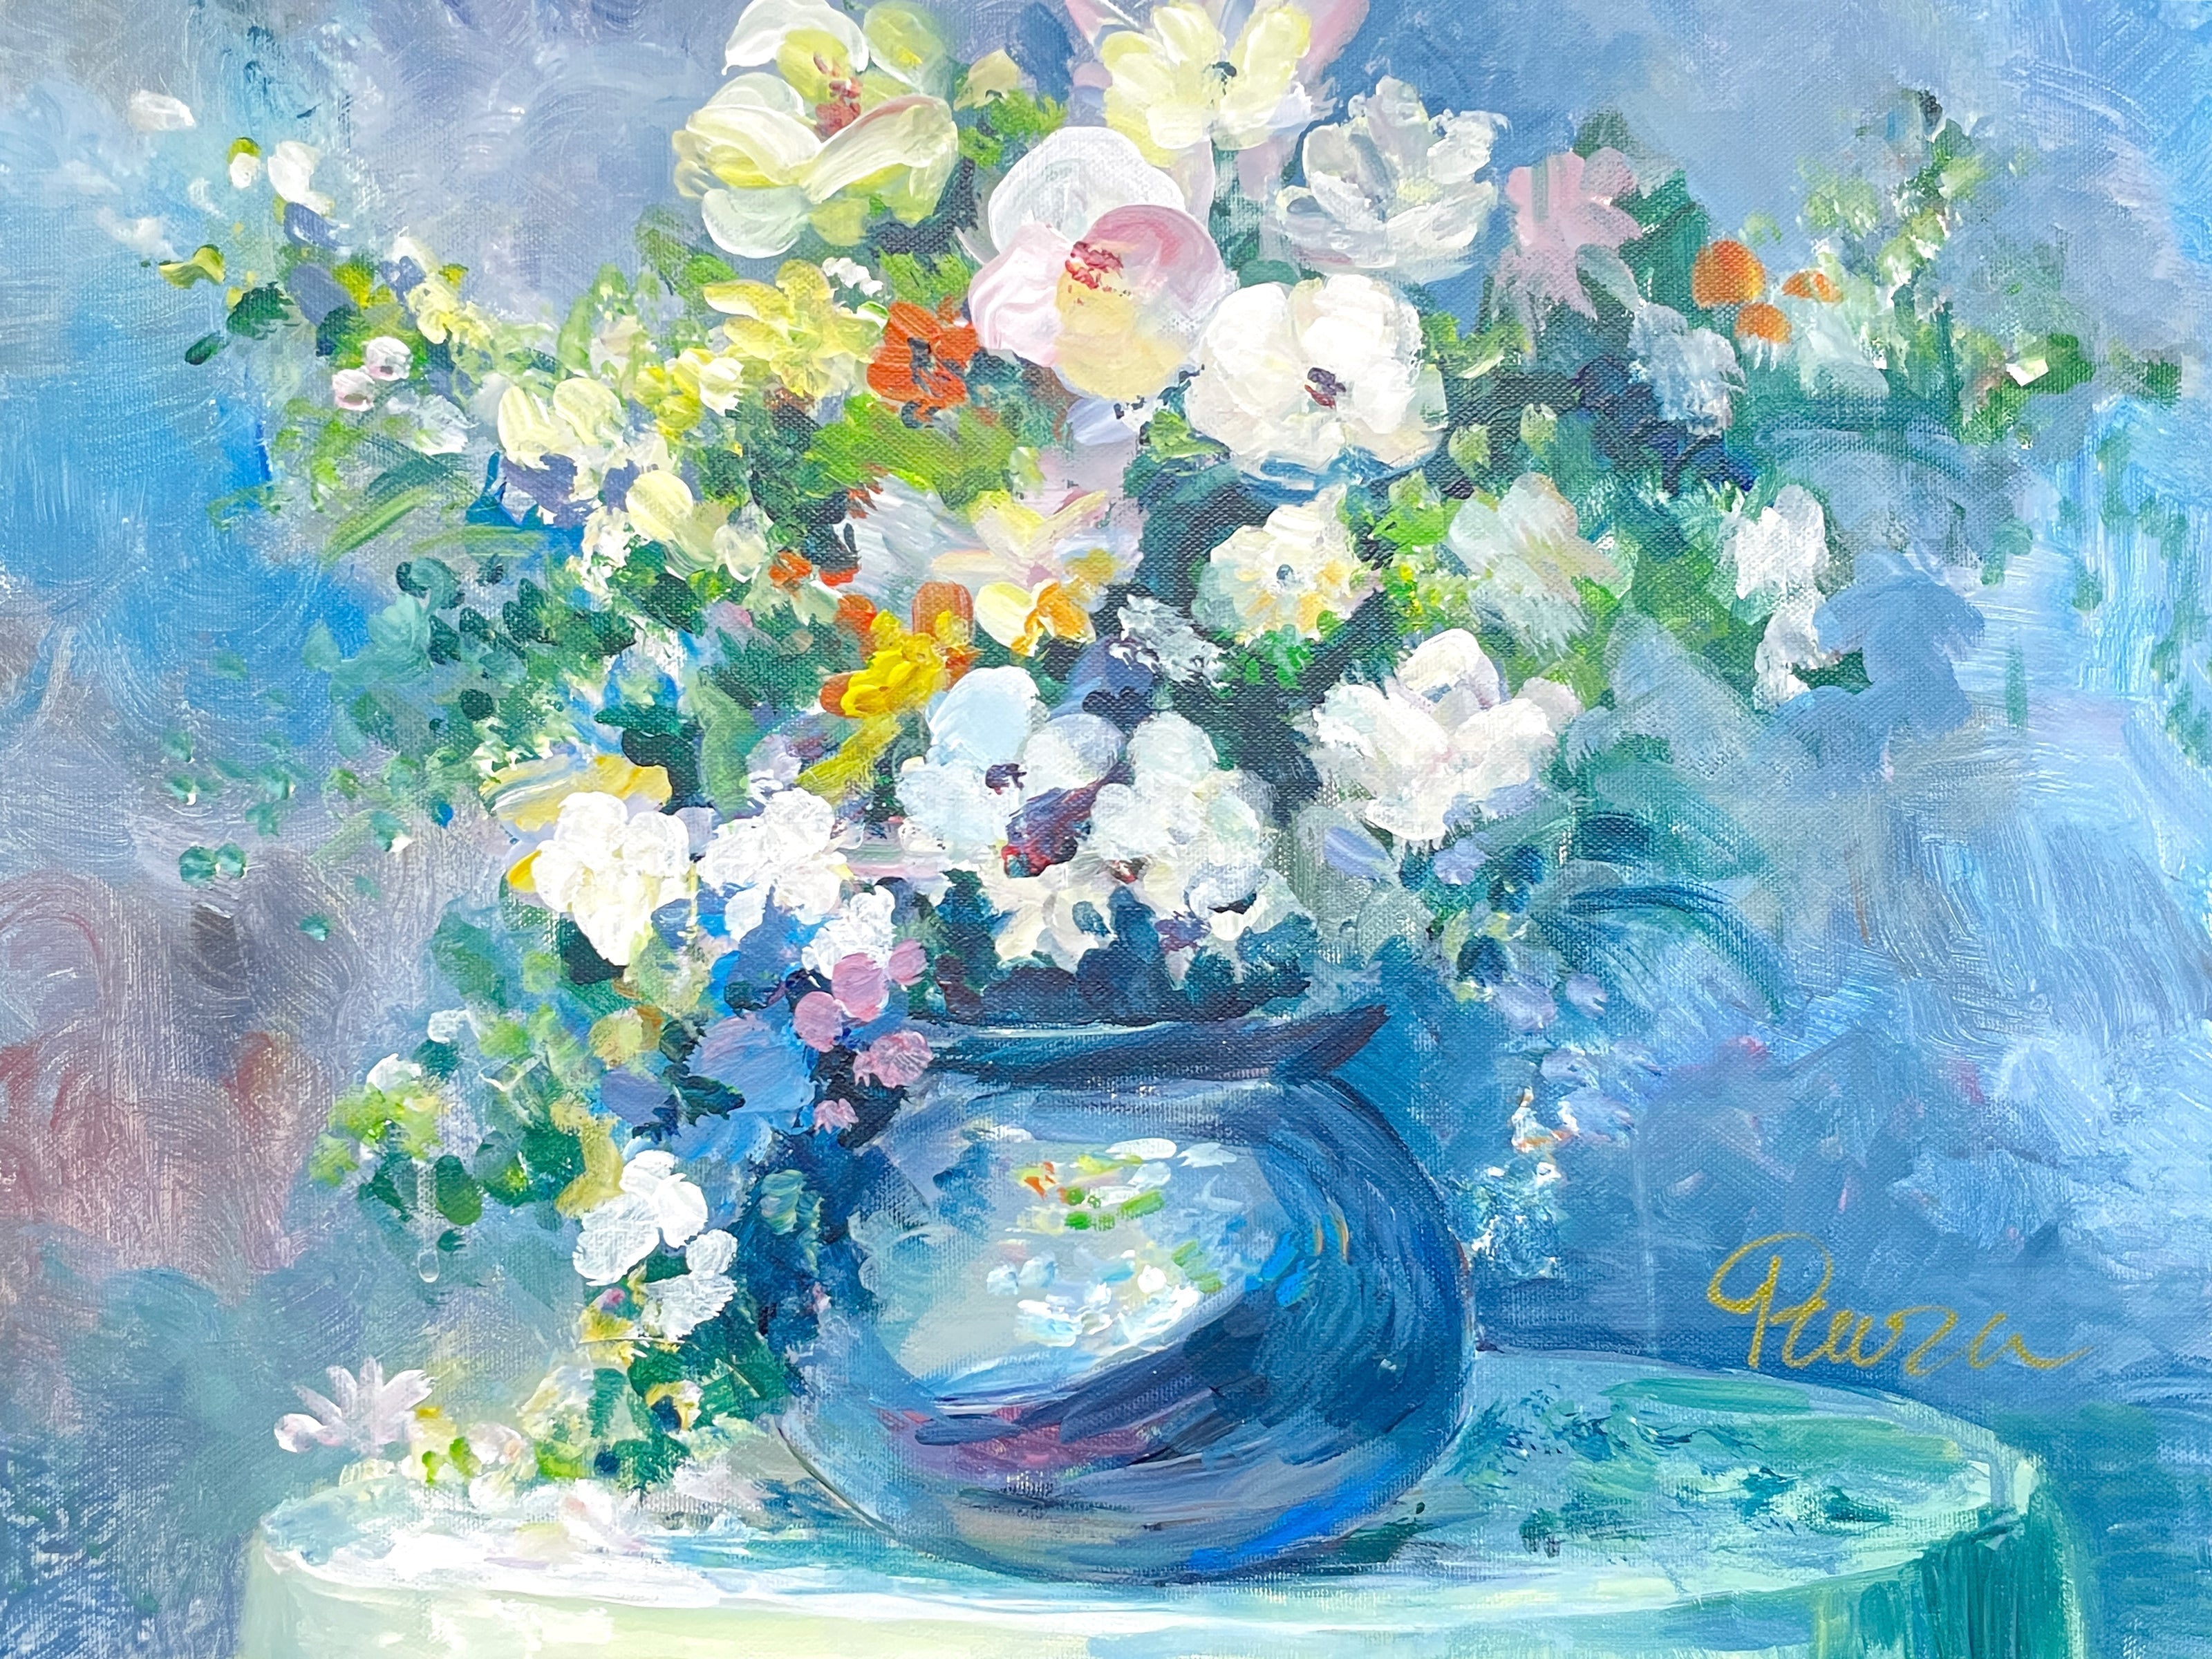 04月29日 (月祝) 18:00-21:00 | 日本橋 | オーギュスト・ルノワール | 花束 (Bouquet of Chrysanthemums by Pierre-Auguste Renoir at Nihon-bashi)